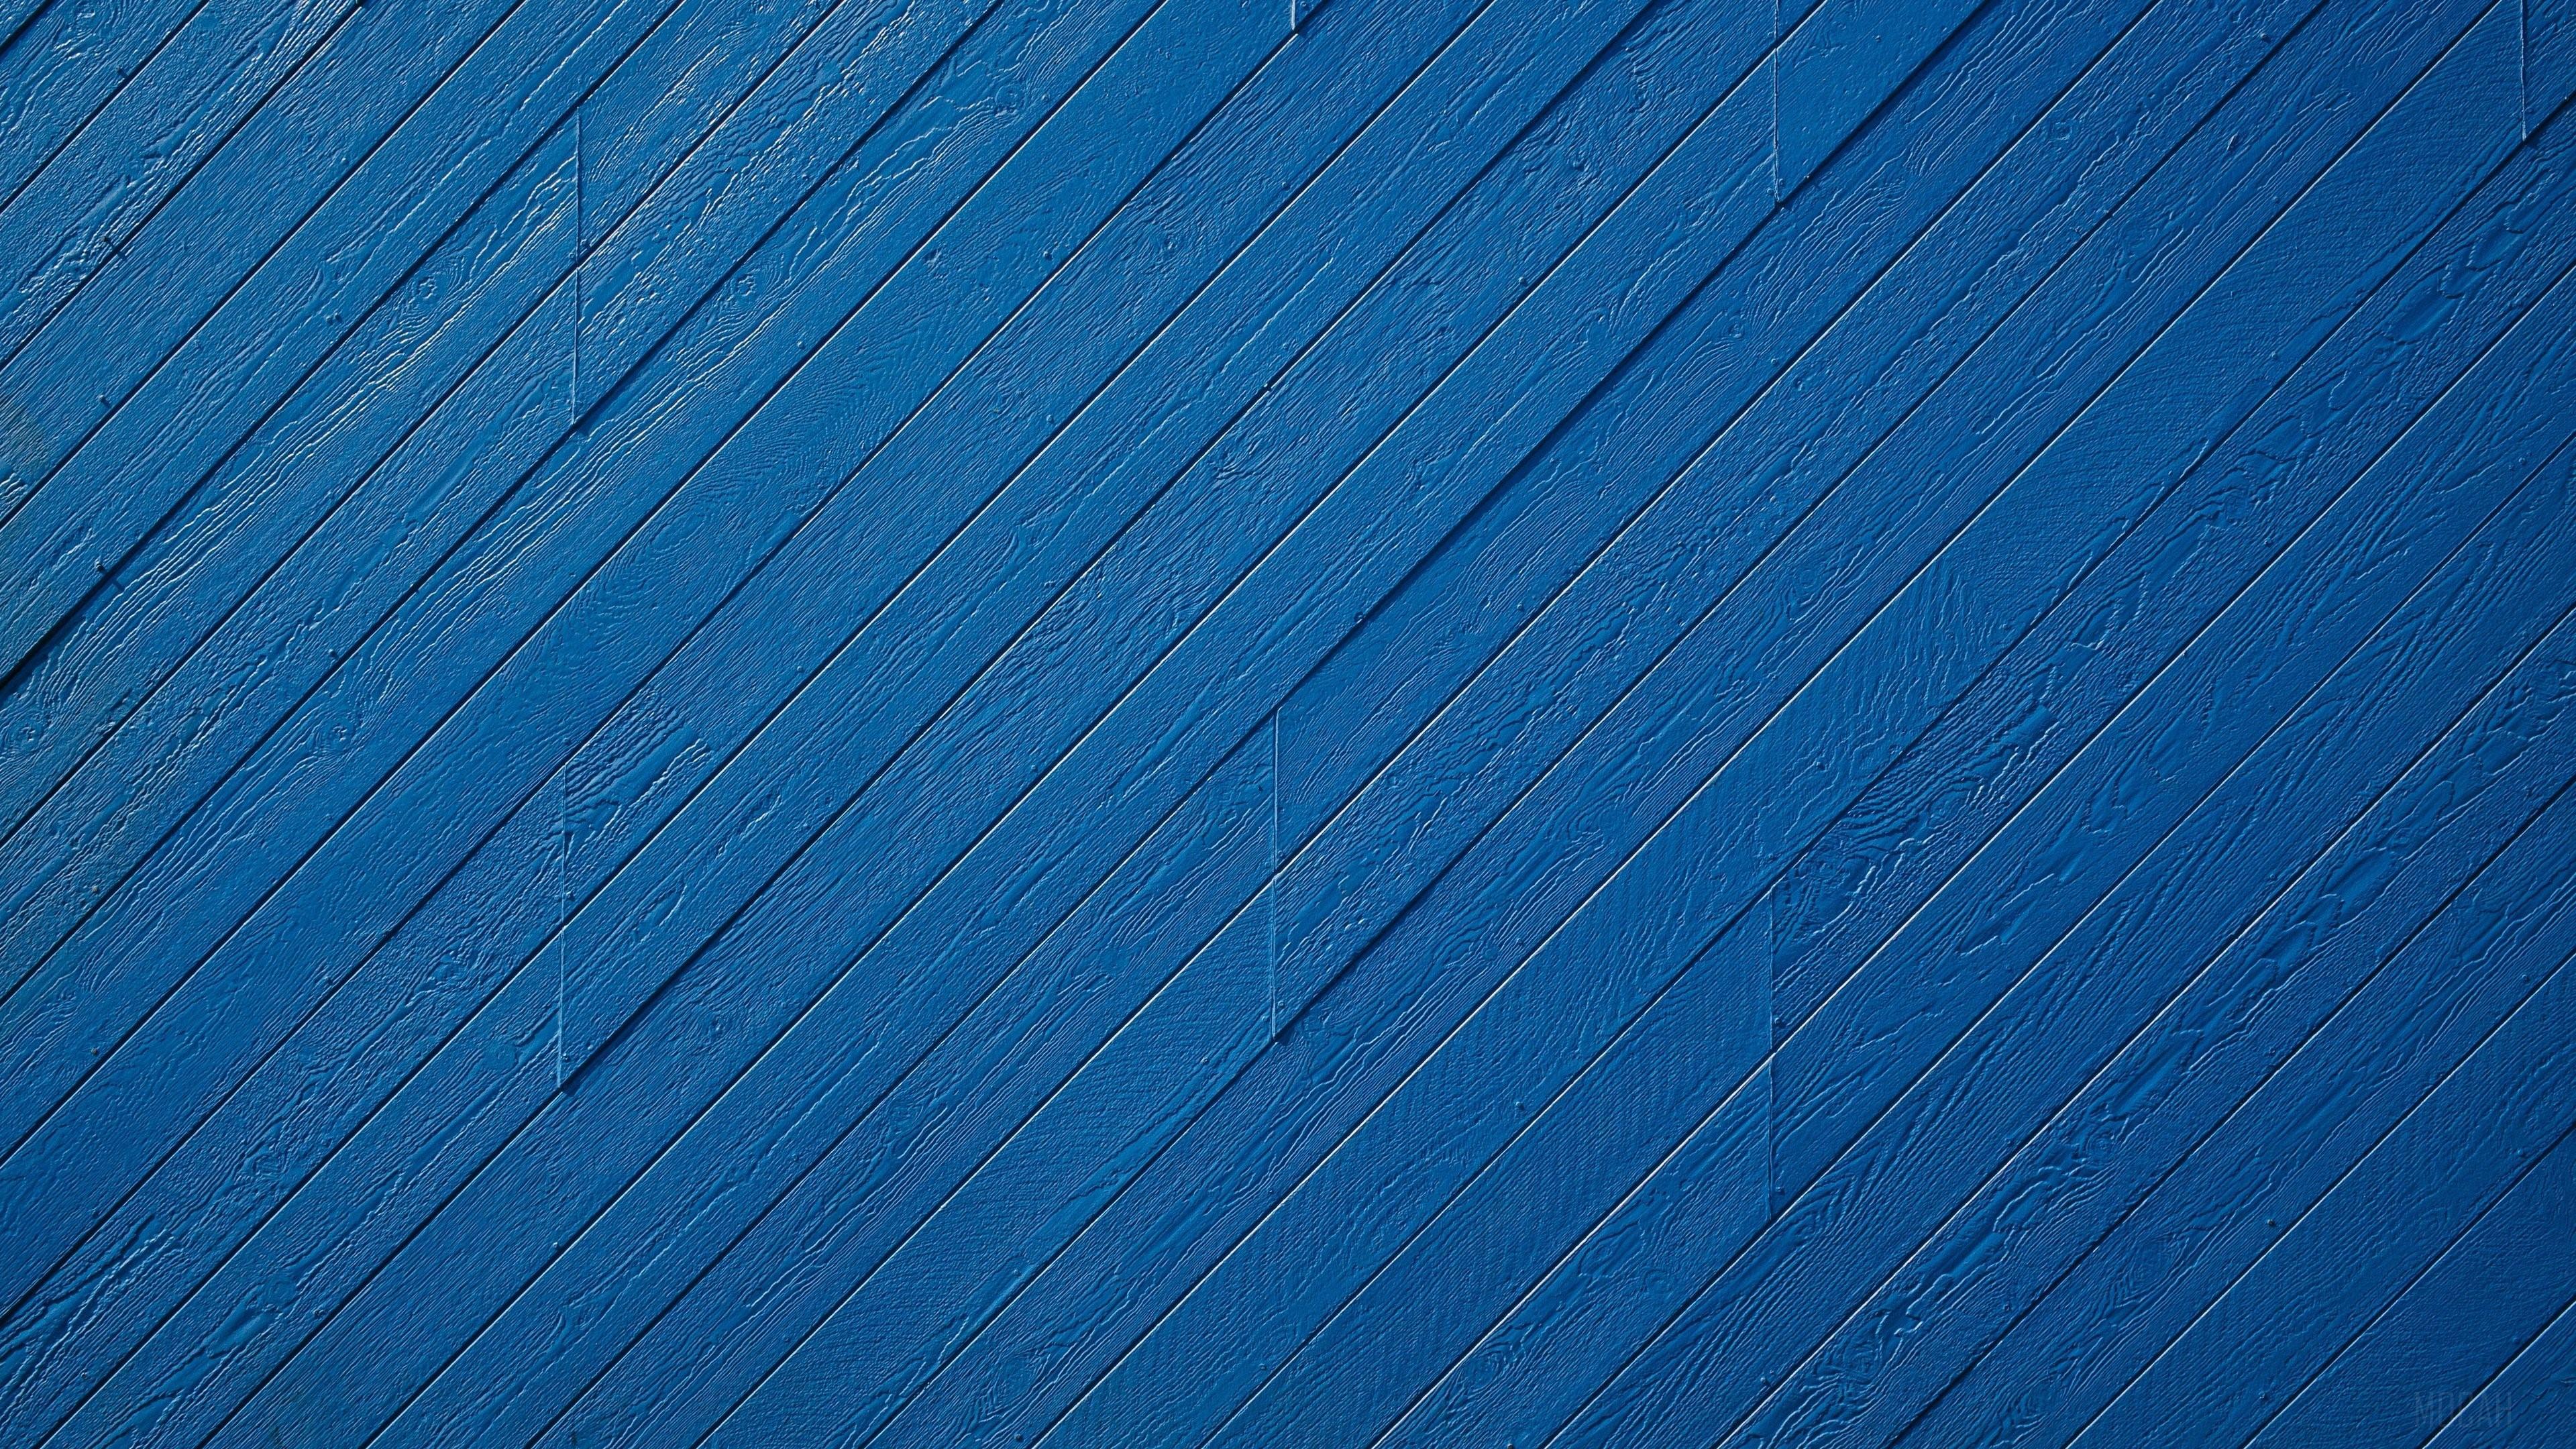 HD wallpaper, Blue Wood Pattern 4K